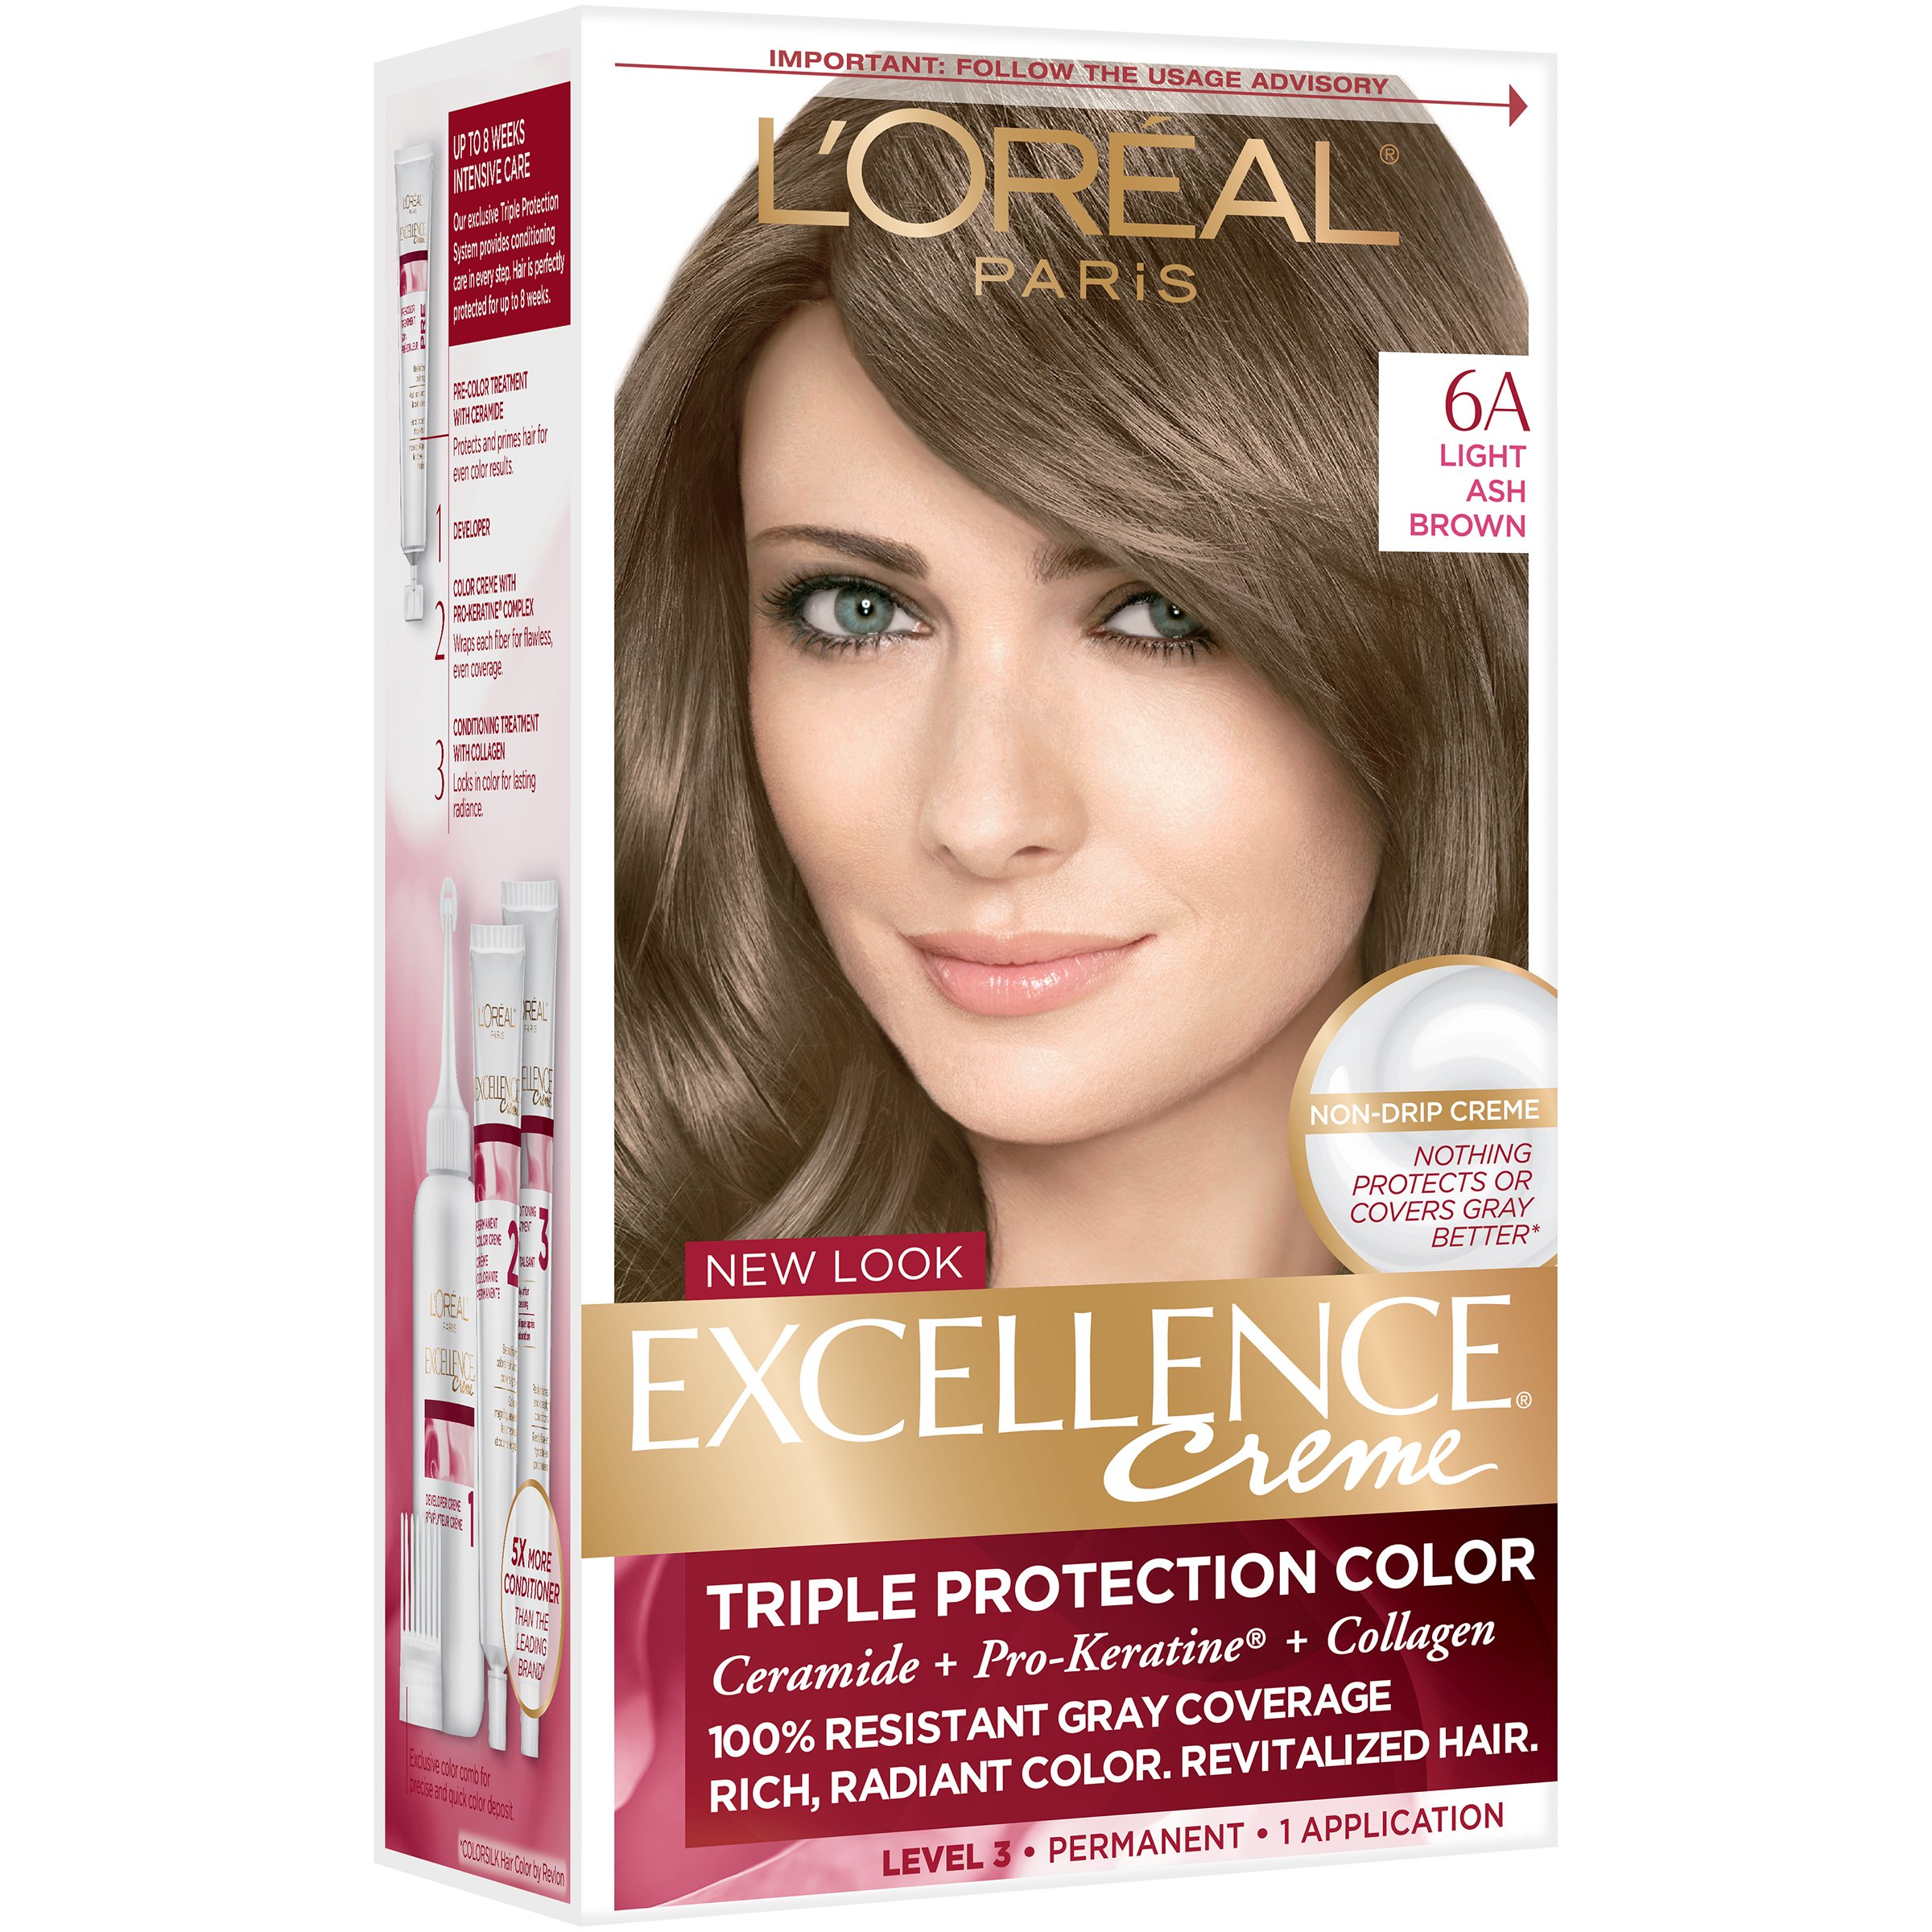 L'Oréal Paris Excellence Créme Permanent Hair Color, 6A Light Ash Brown -  Shop Hair Color at H-E-B